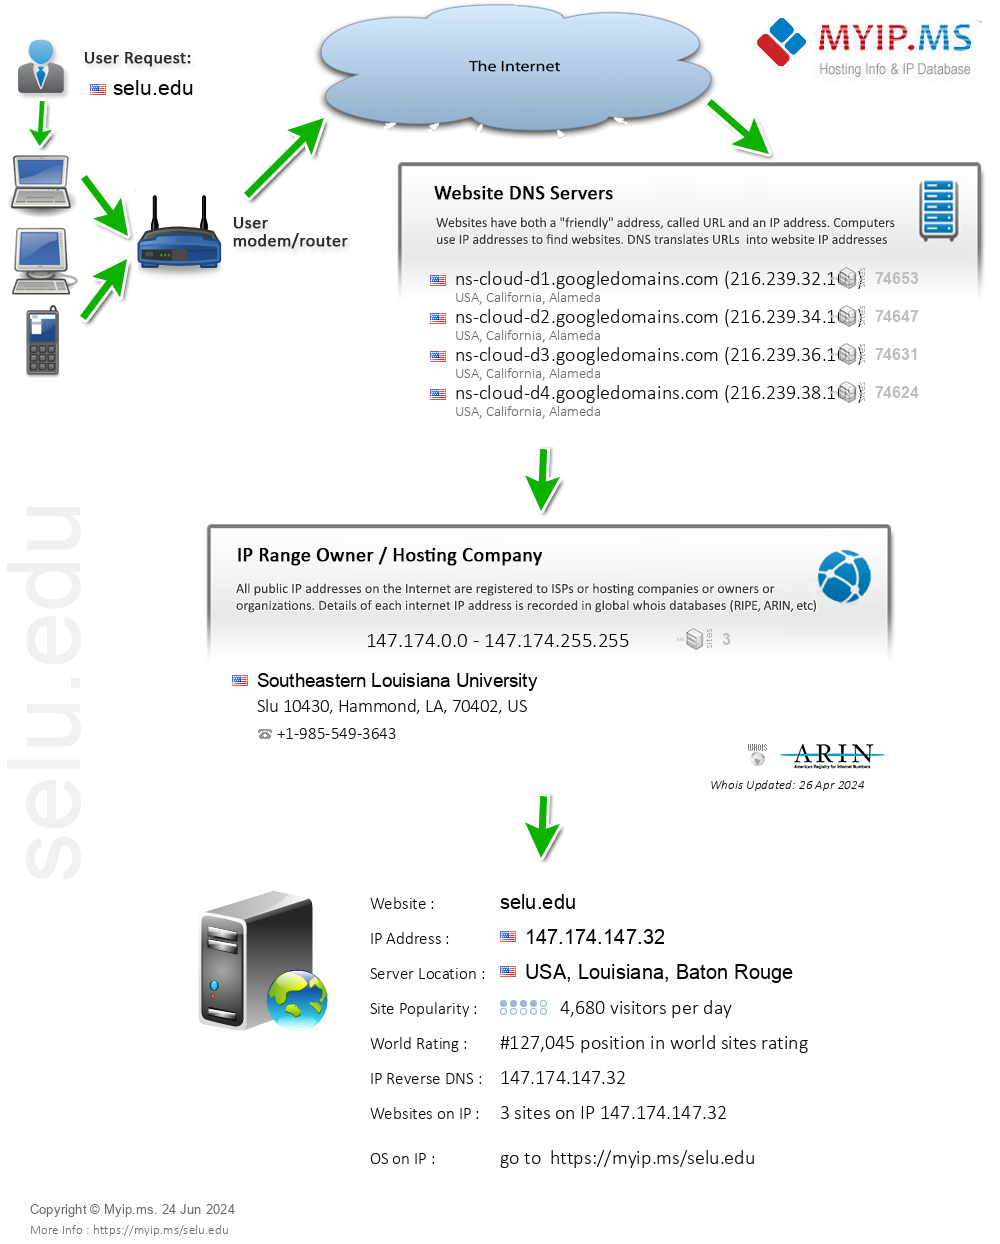 Selu.edu - Website Hosting Visual IP Diagram